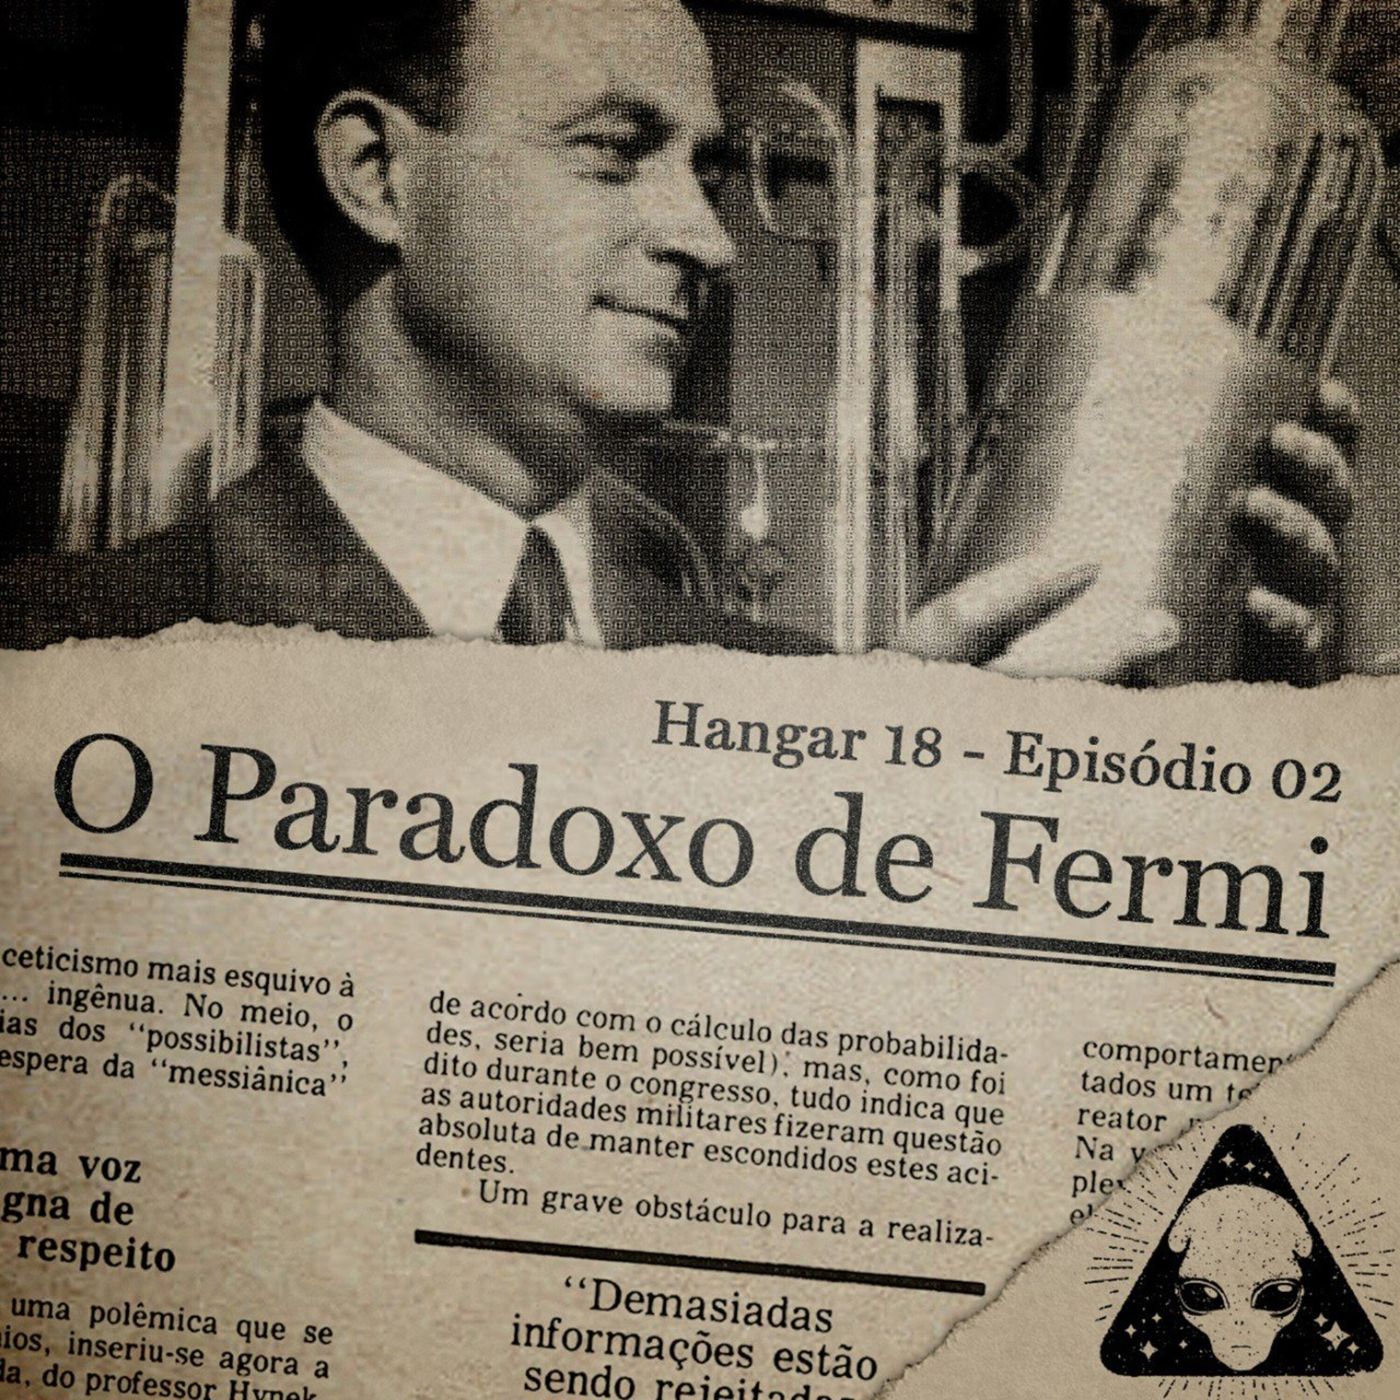 Hangar 18 - Ep 02 - O Paradoxo de Fermi